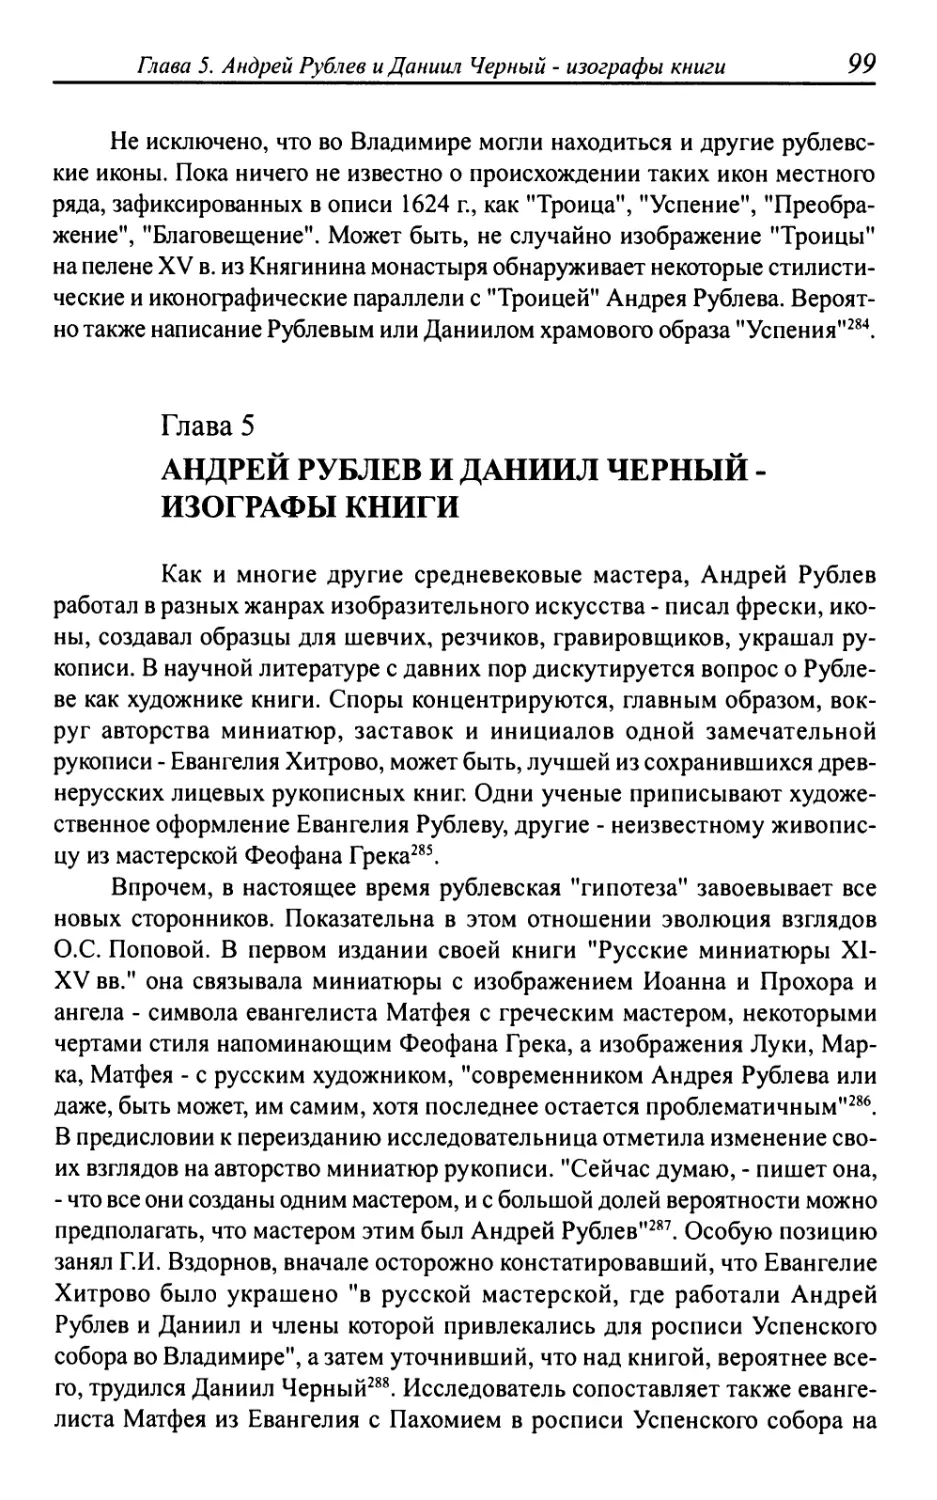 Андрей Рублев и Даниил Черный - изографы книги